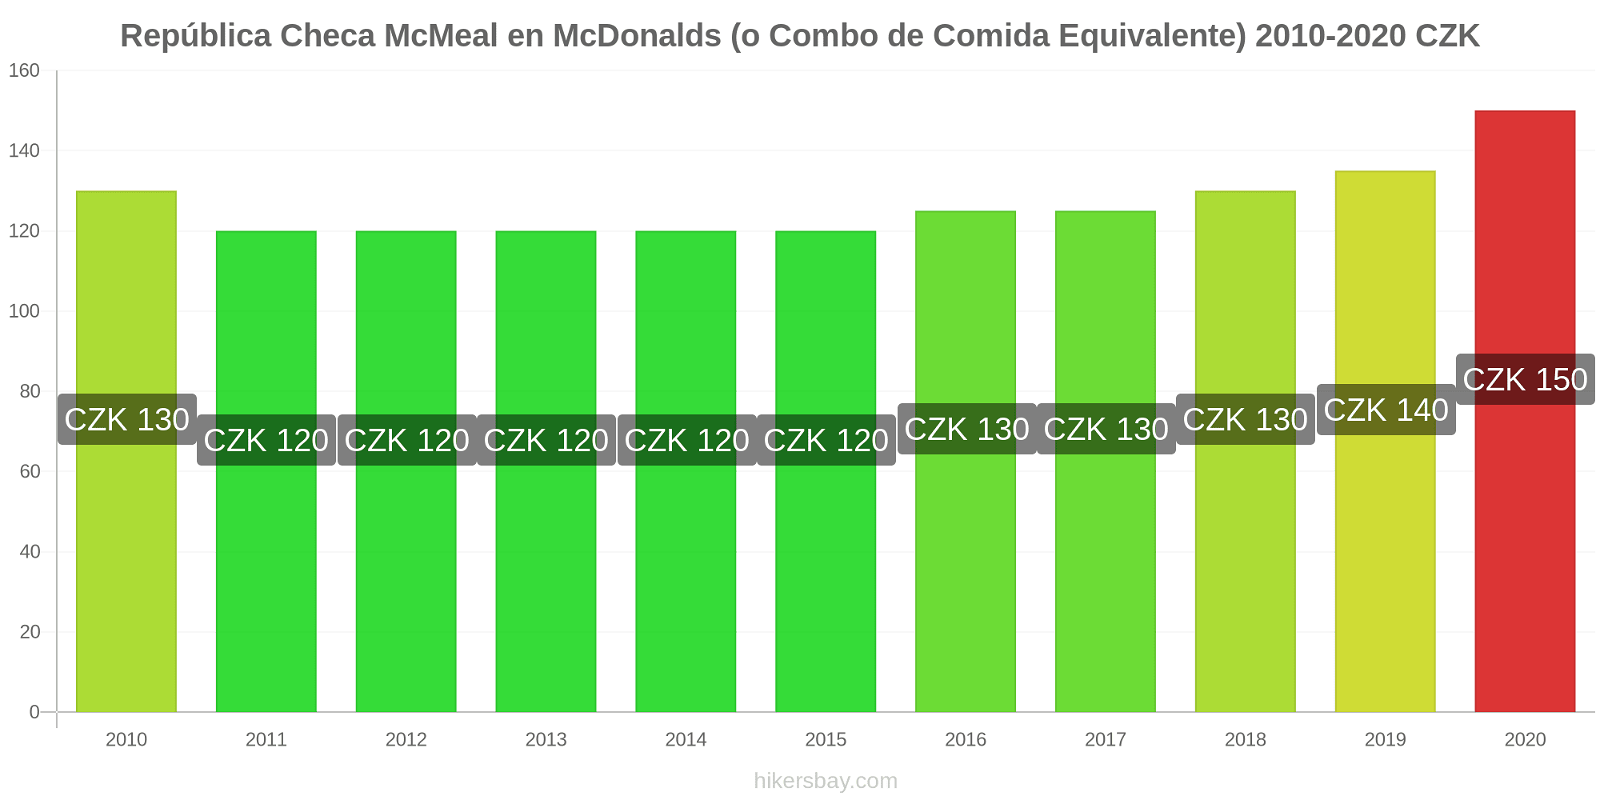 República Checa cambios de precios McMeal en McDonalds (o menú equivalente) hikersbay.com